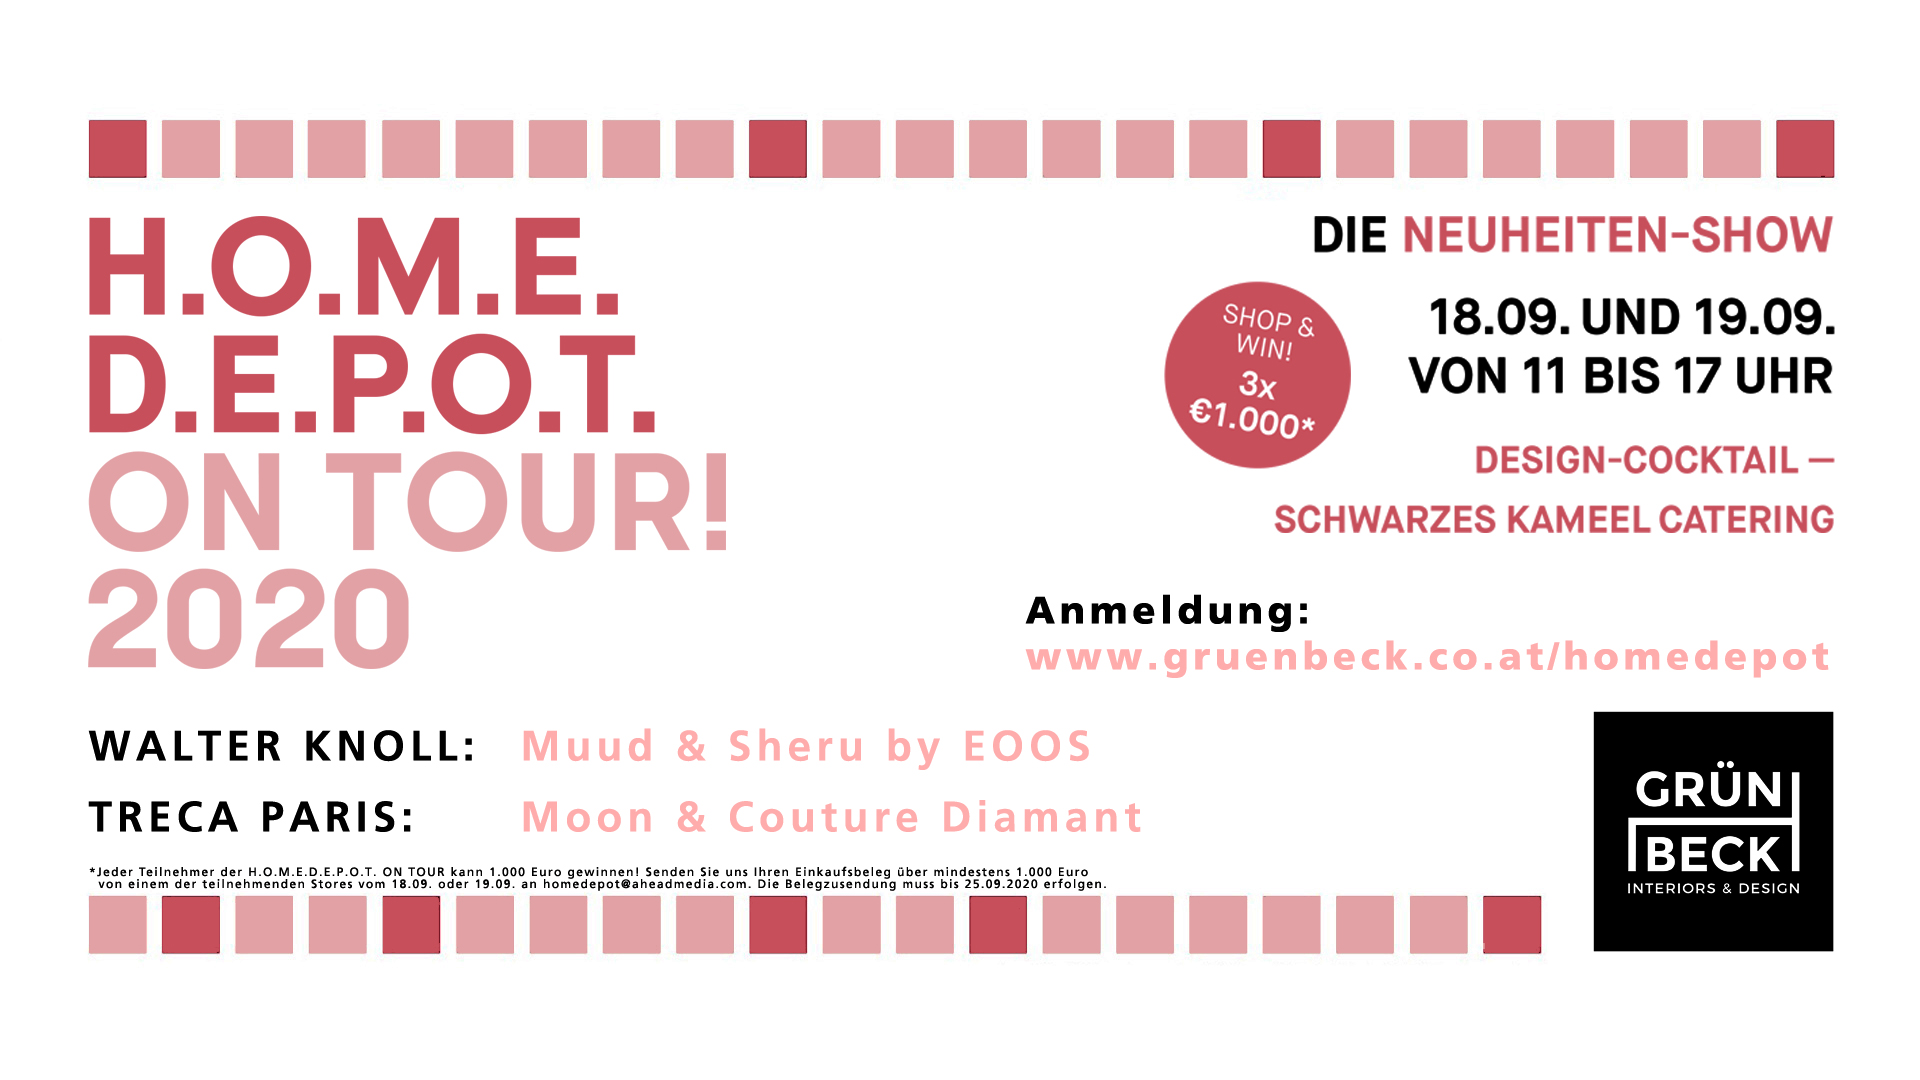 Die Home Depot on Tour November 2020 mit den Neuheiten von Treca Paris und Walter Knoll bei Gruenbeck Interiors Wien